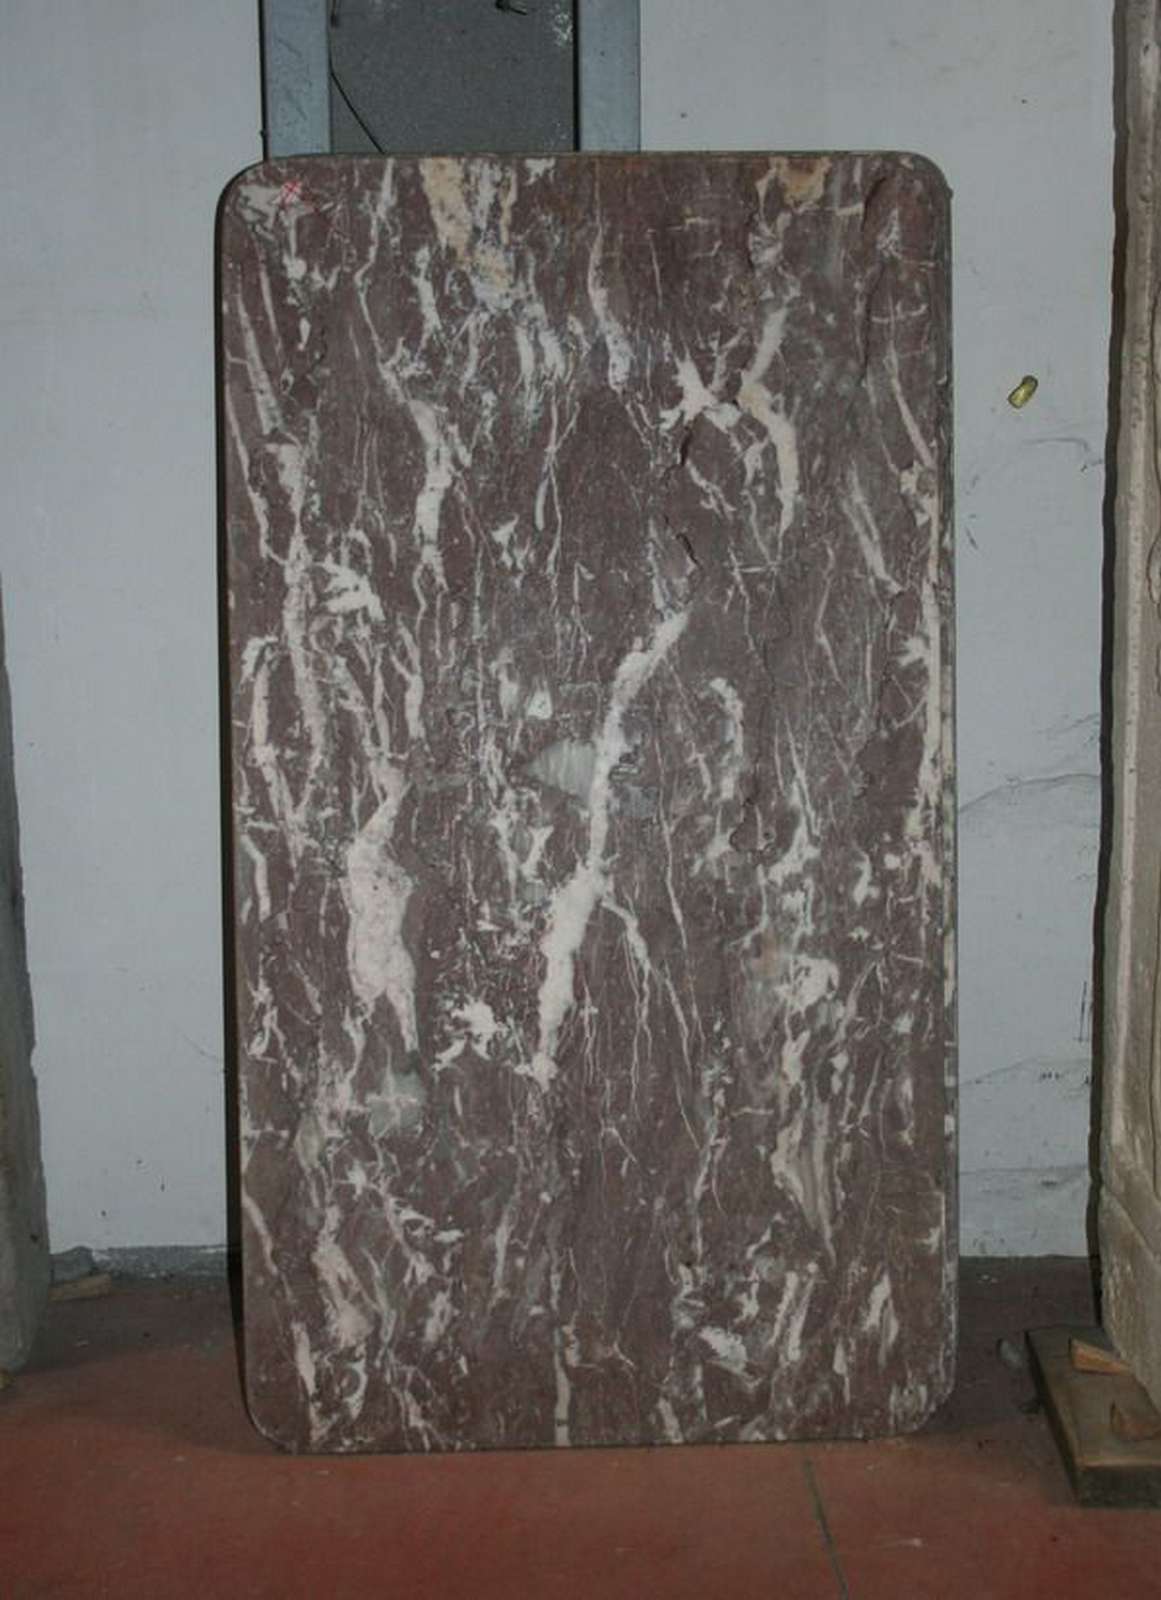 Nr. 3 piani antichi in marmo - Tavoli in vari materiali - Tavoli e complementi - Prodotti - Antichità Fiorillo